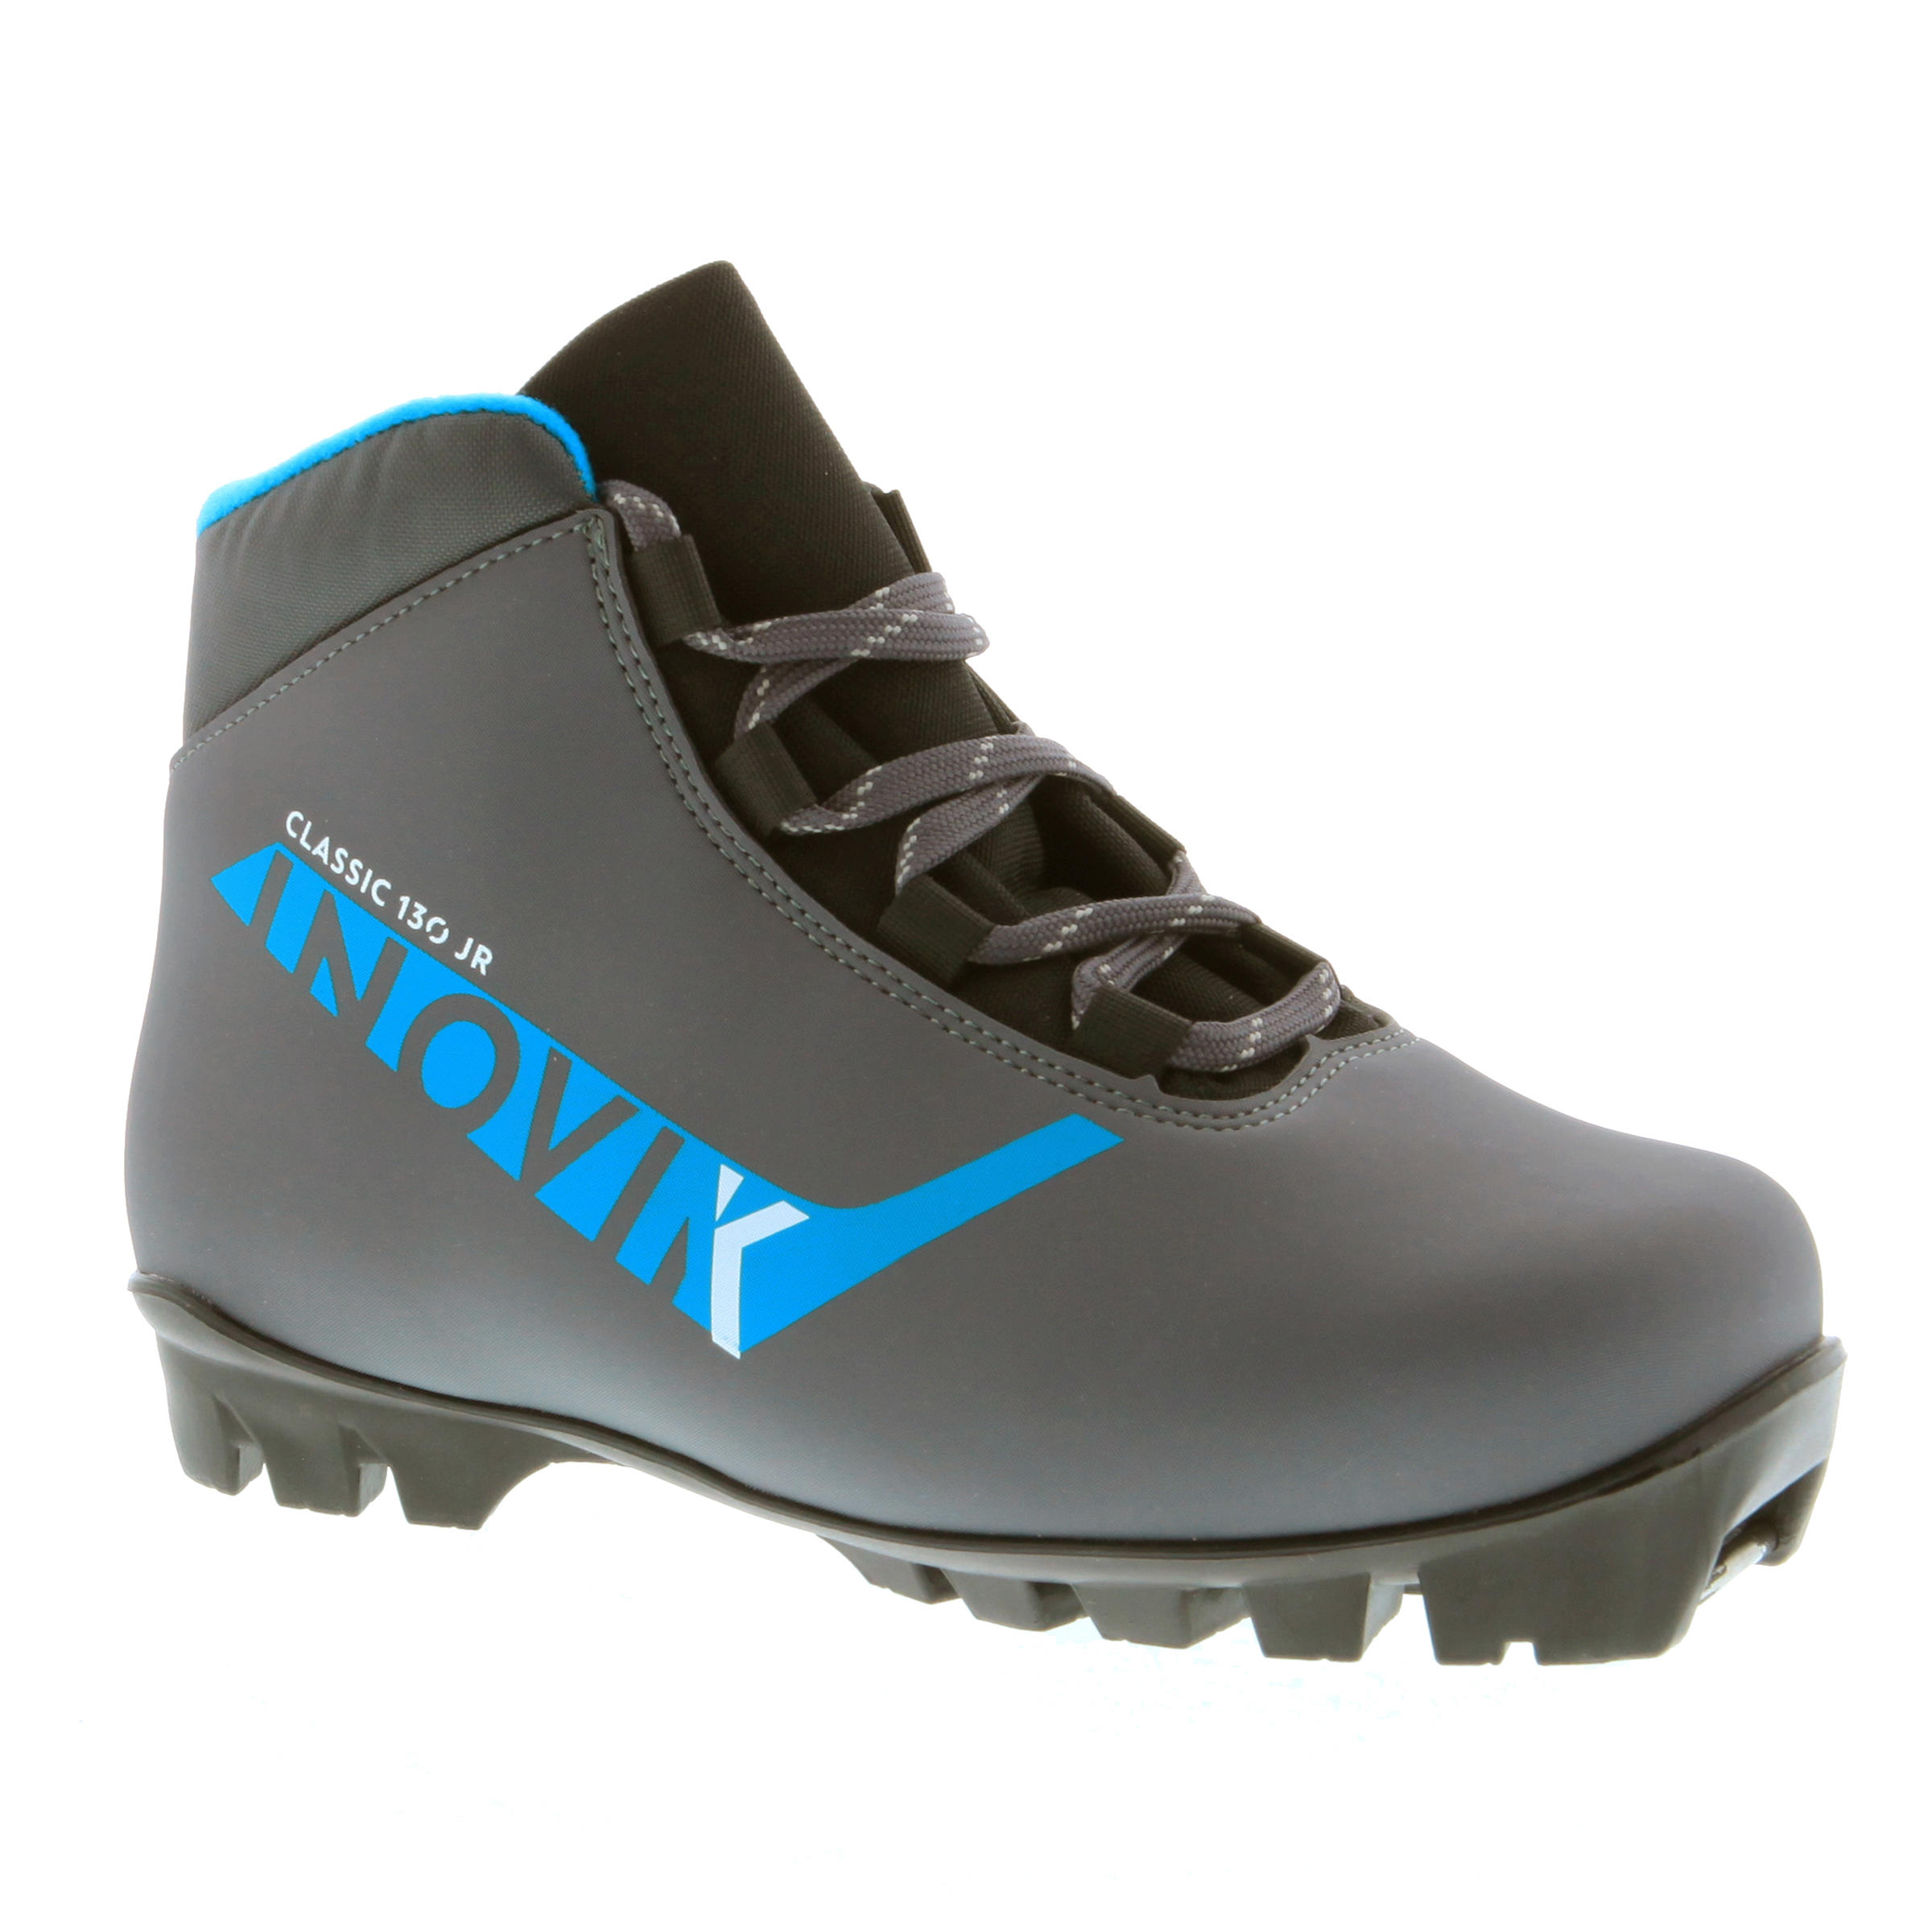 INOVIK Xc s 130 classic junior cross-country skiing boots - grey